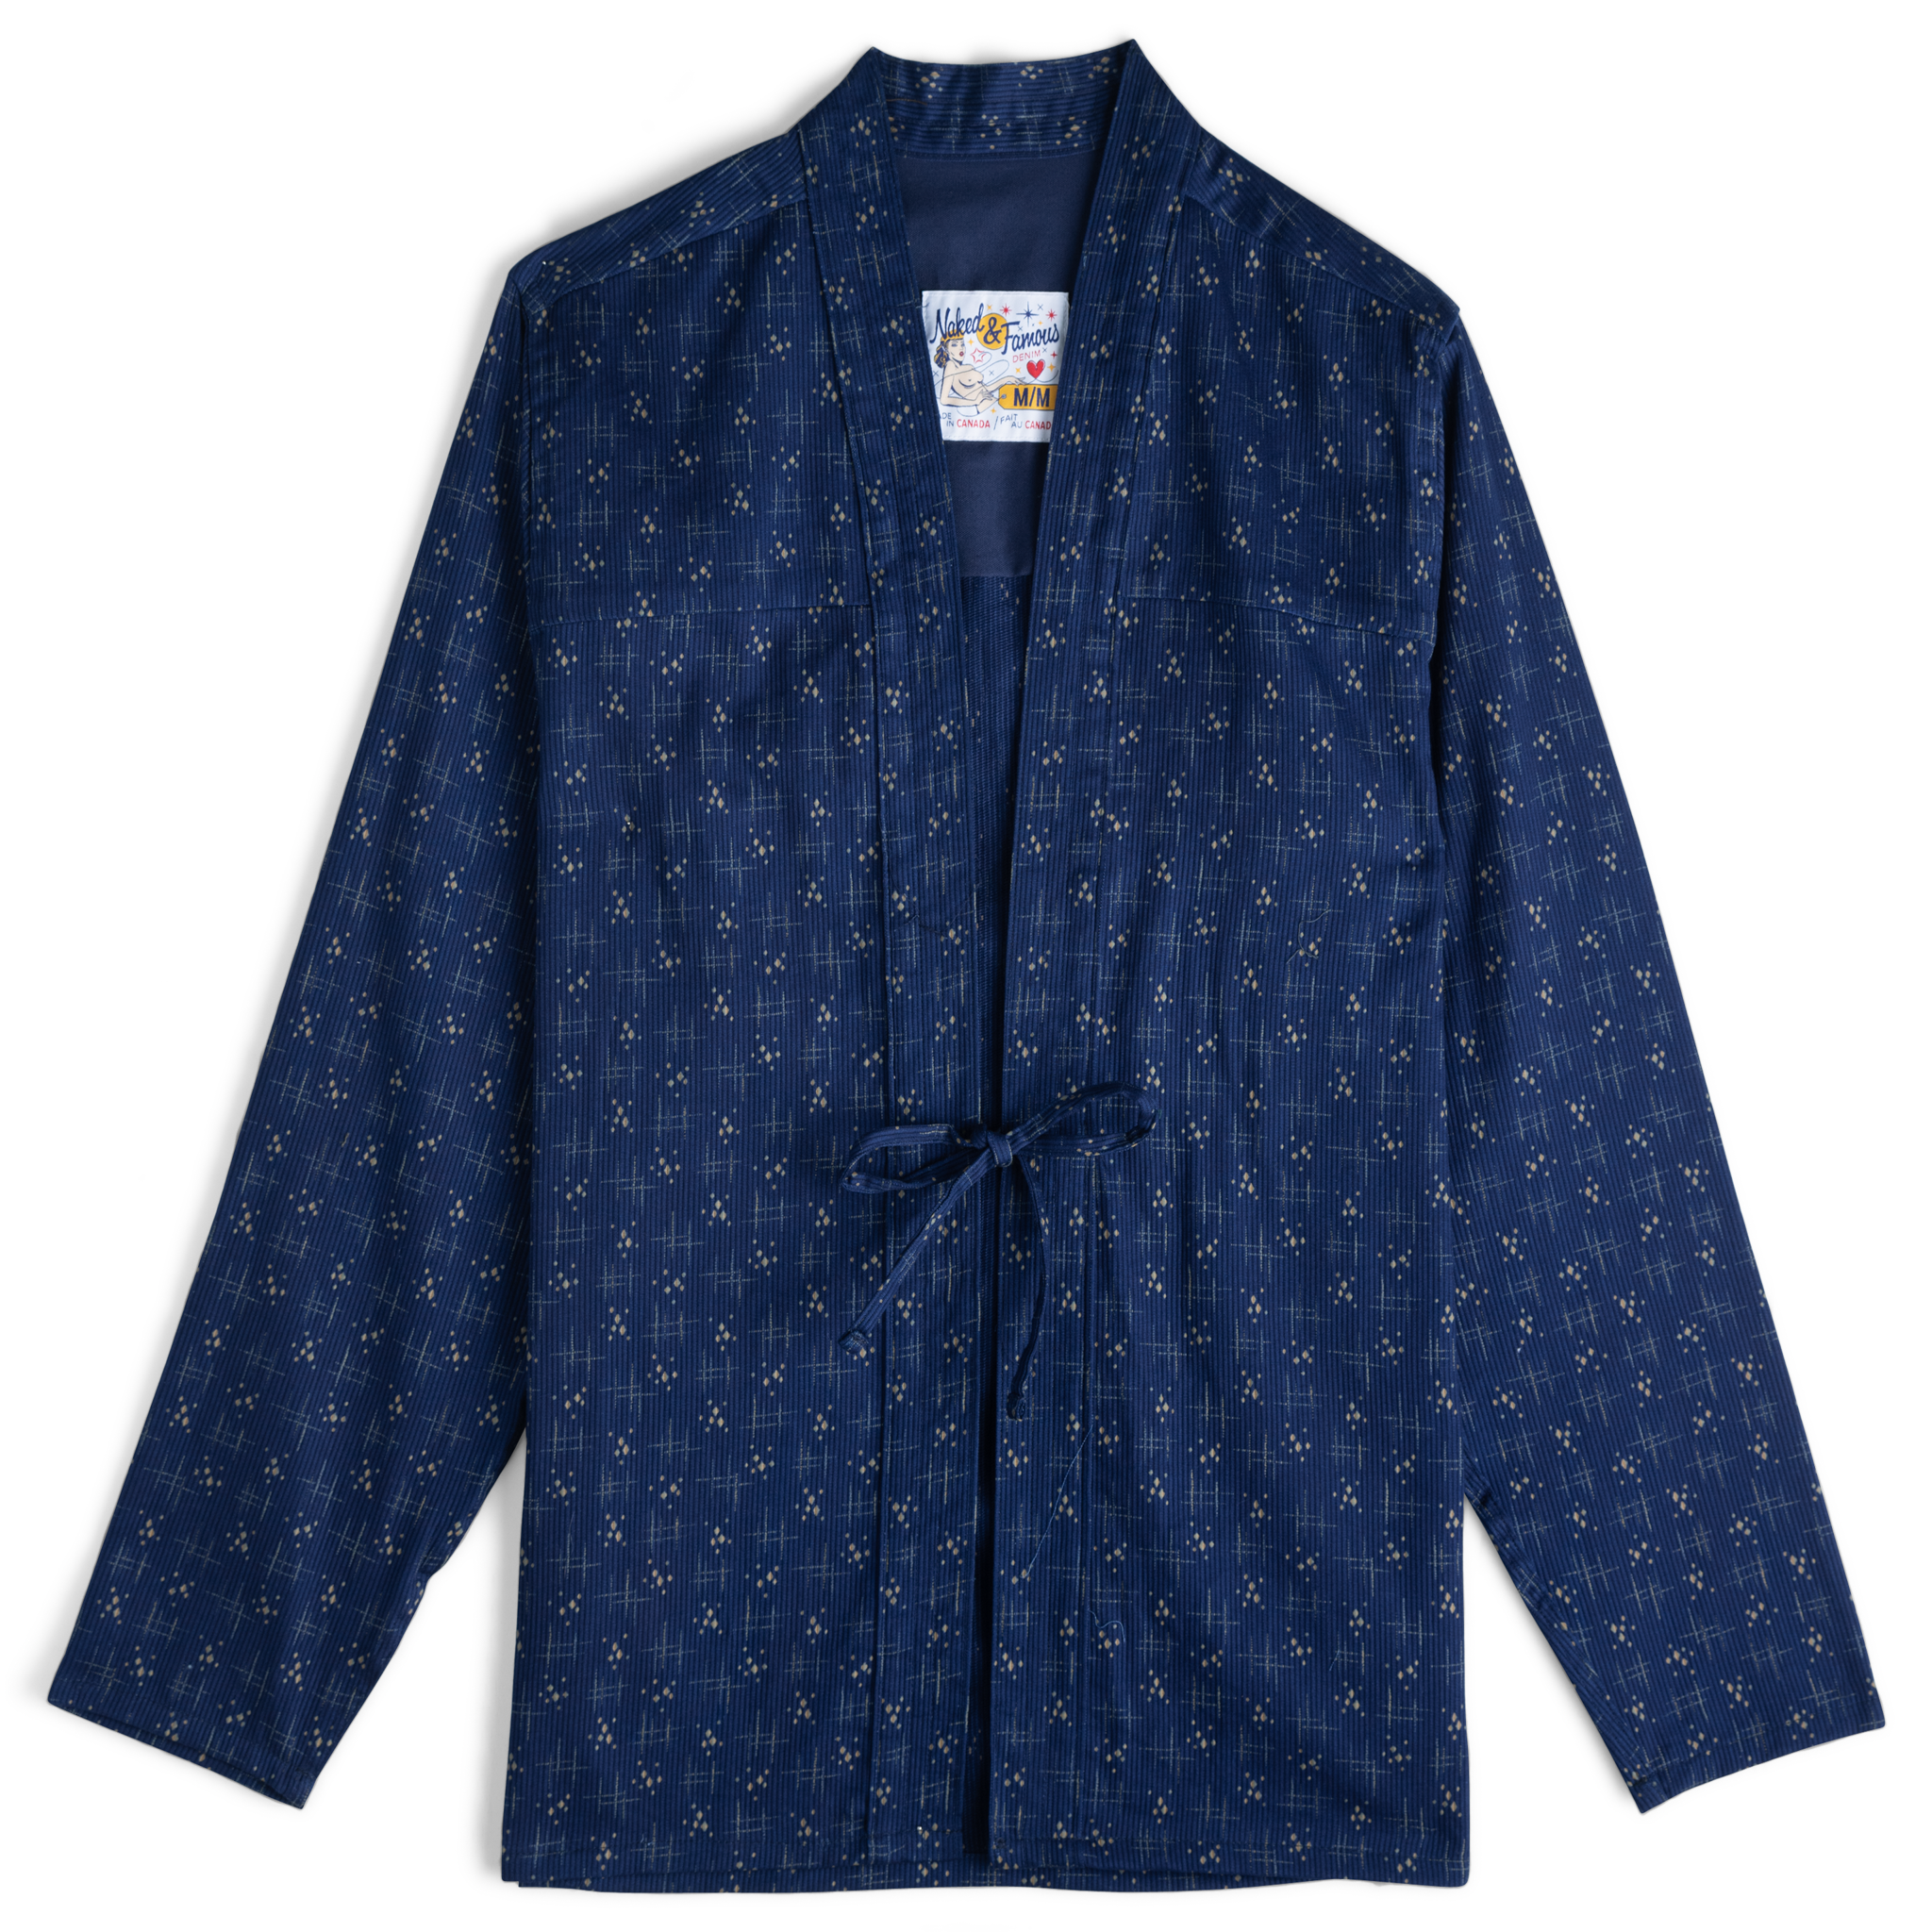  Kimono Shirt - Mid-Century Pique - flat front 